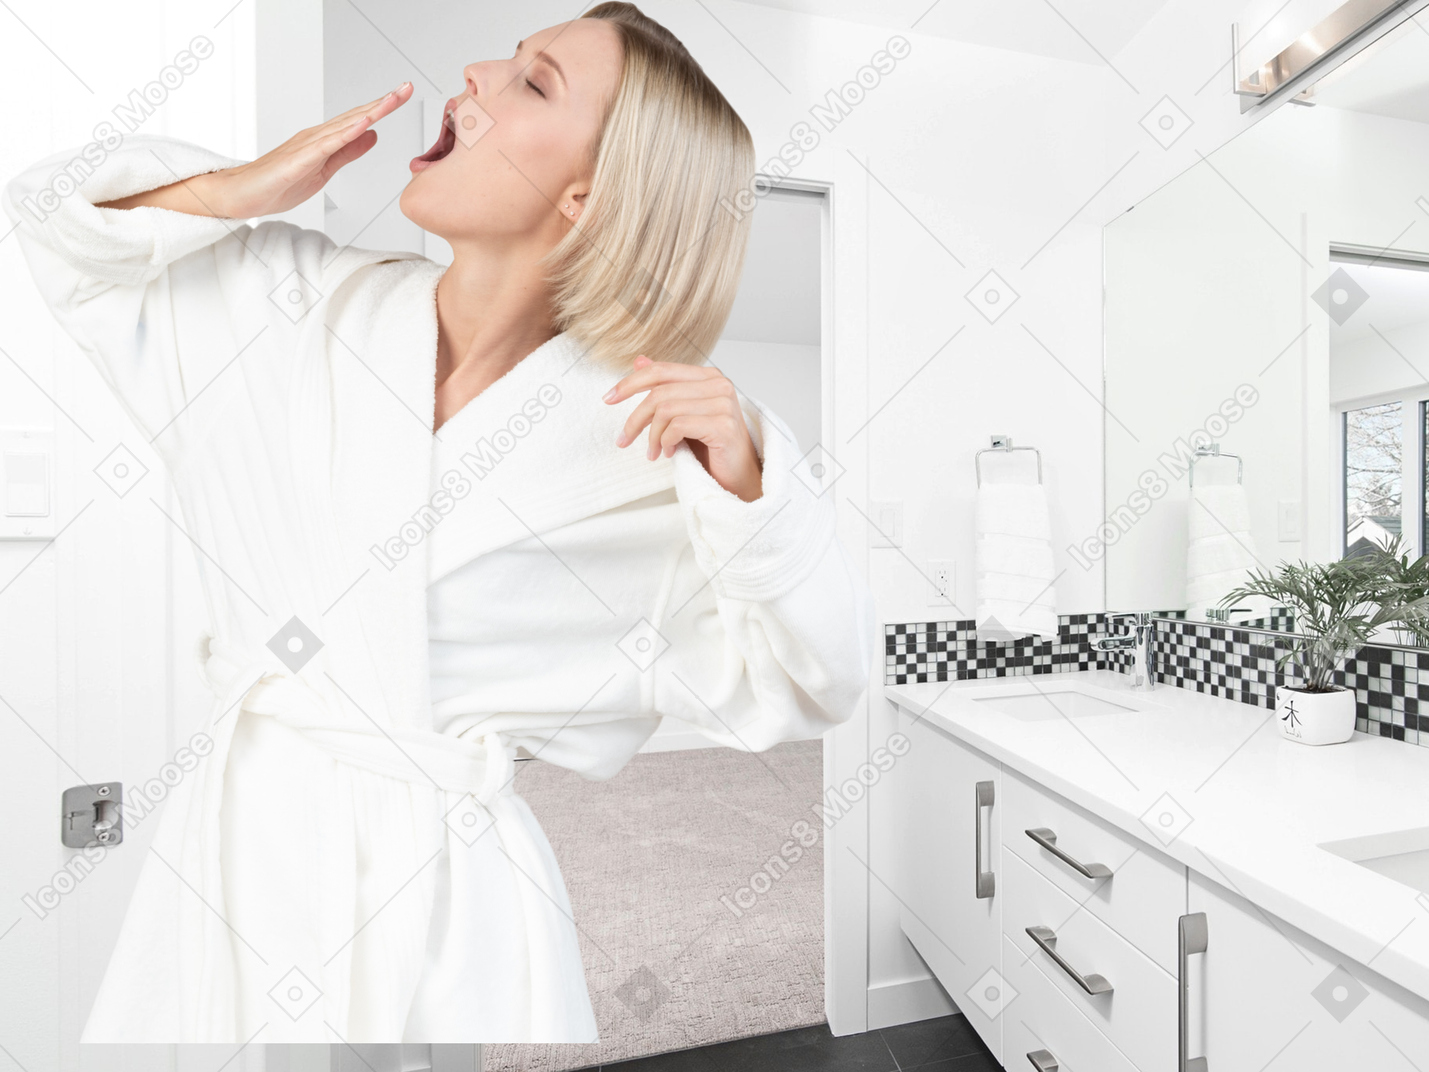 A woman in bathrobe yawning in a bathroom